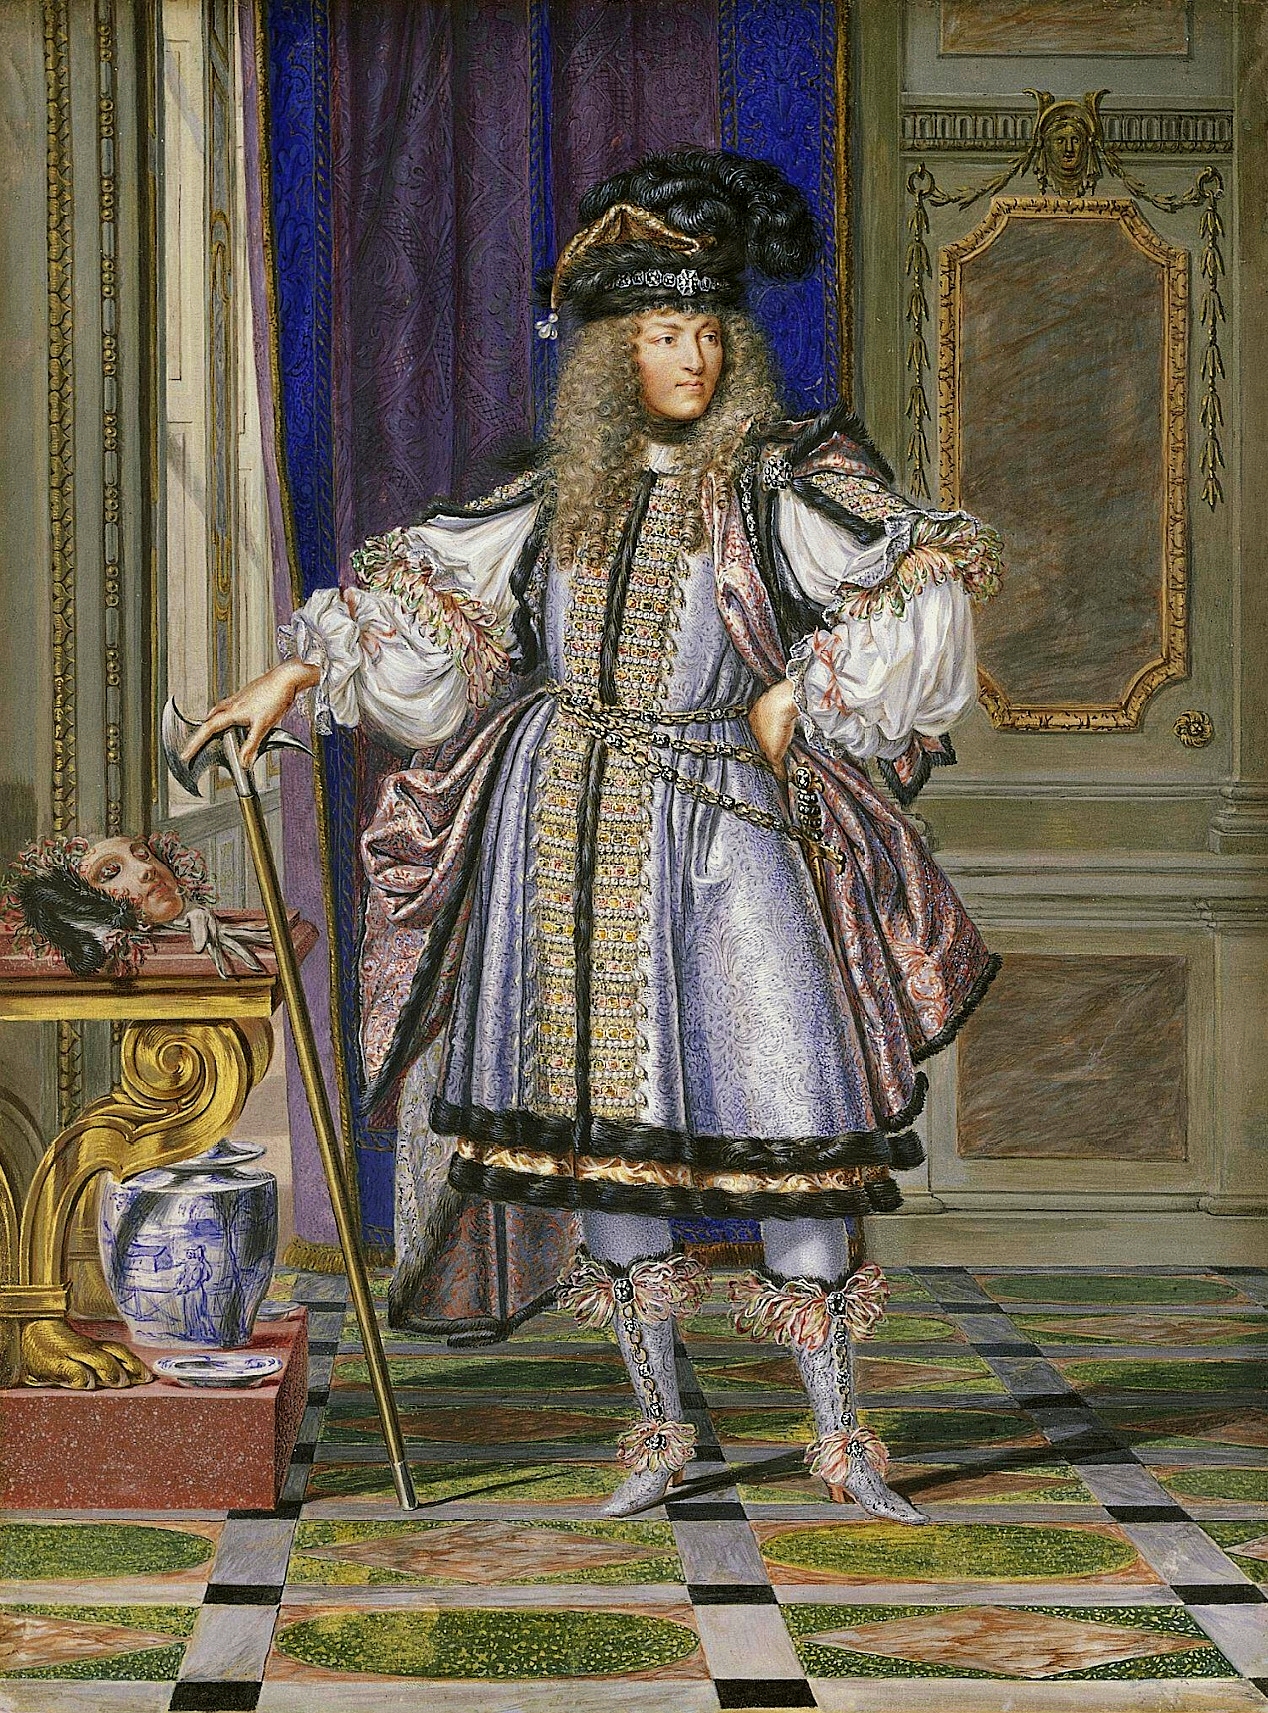 Carnival-costumes: Louis XIV - Fancy dress